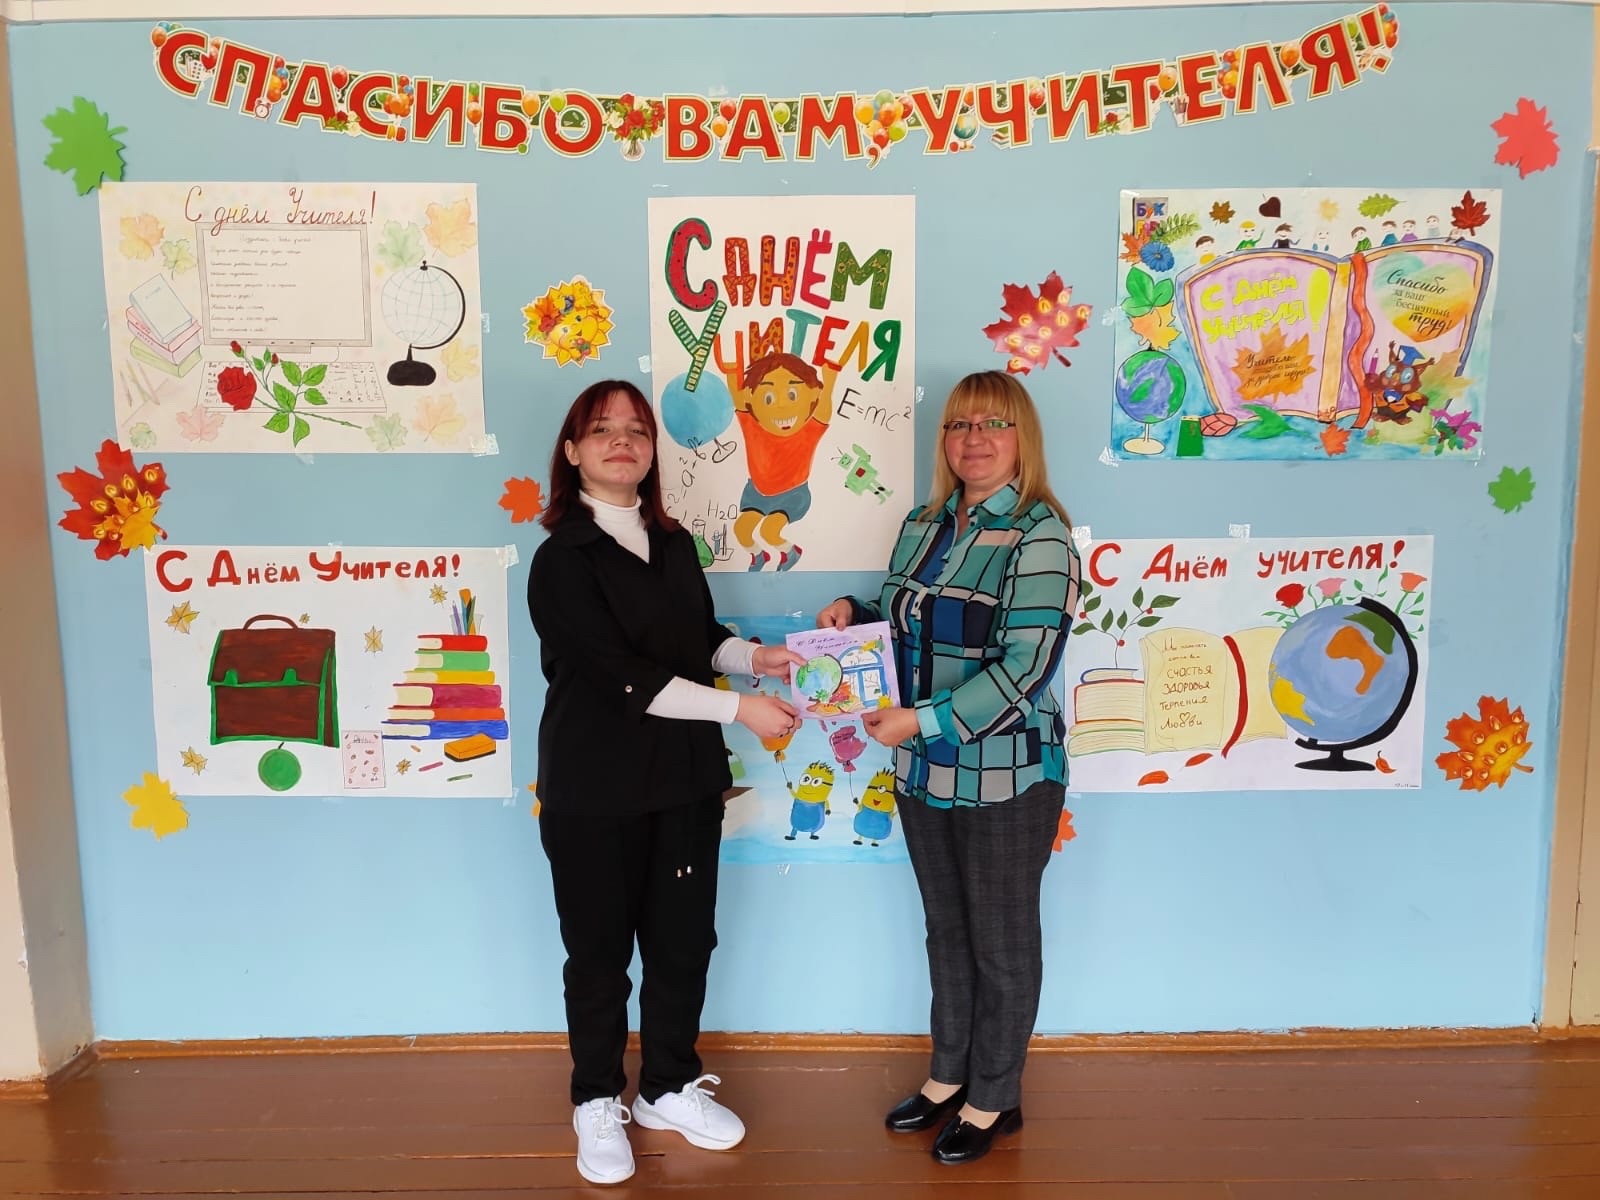 В День учителя Новомосковская система образования запускает акцию #СпасибоУчителямНовомосковска.